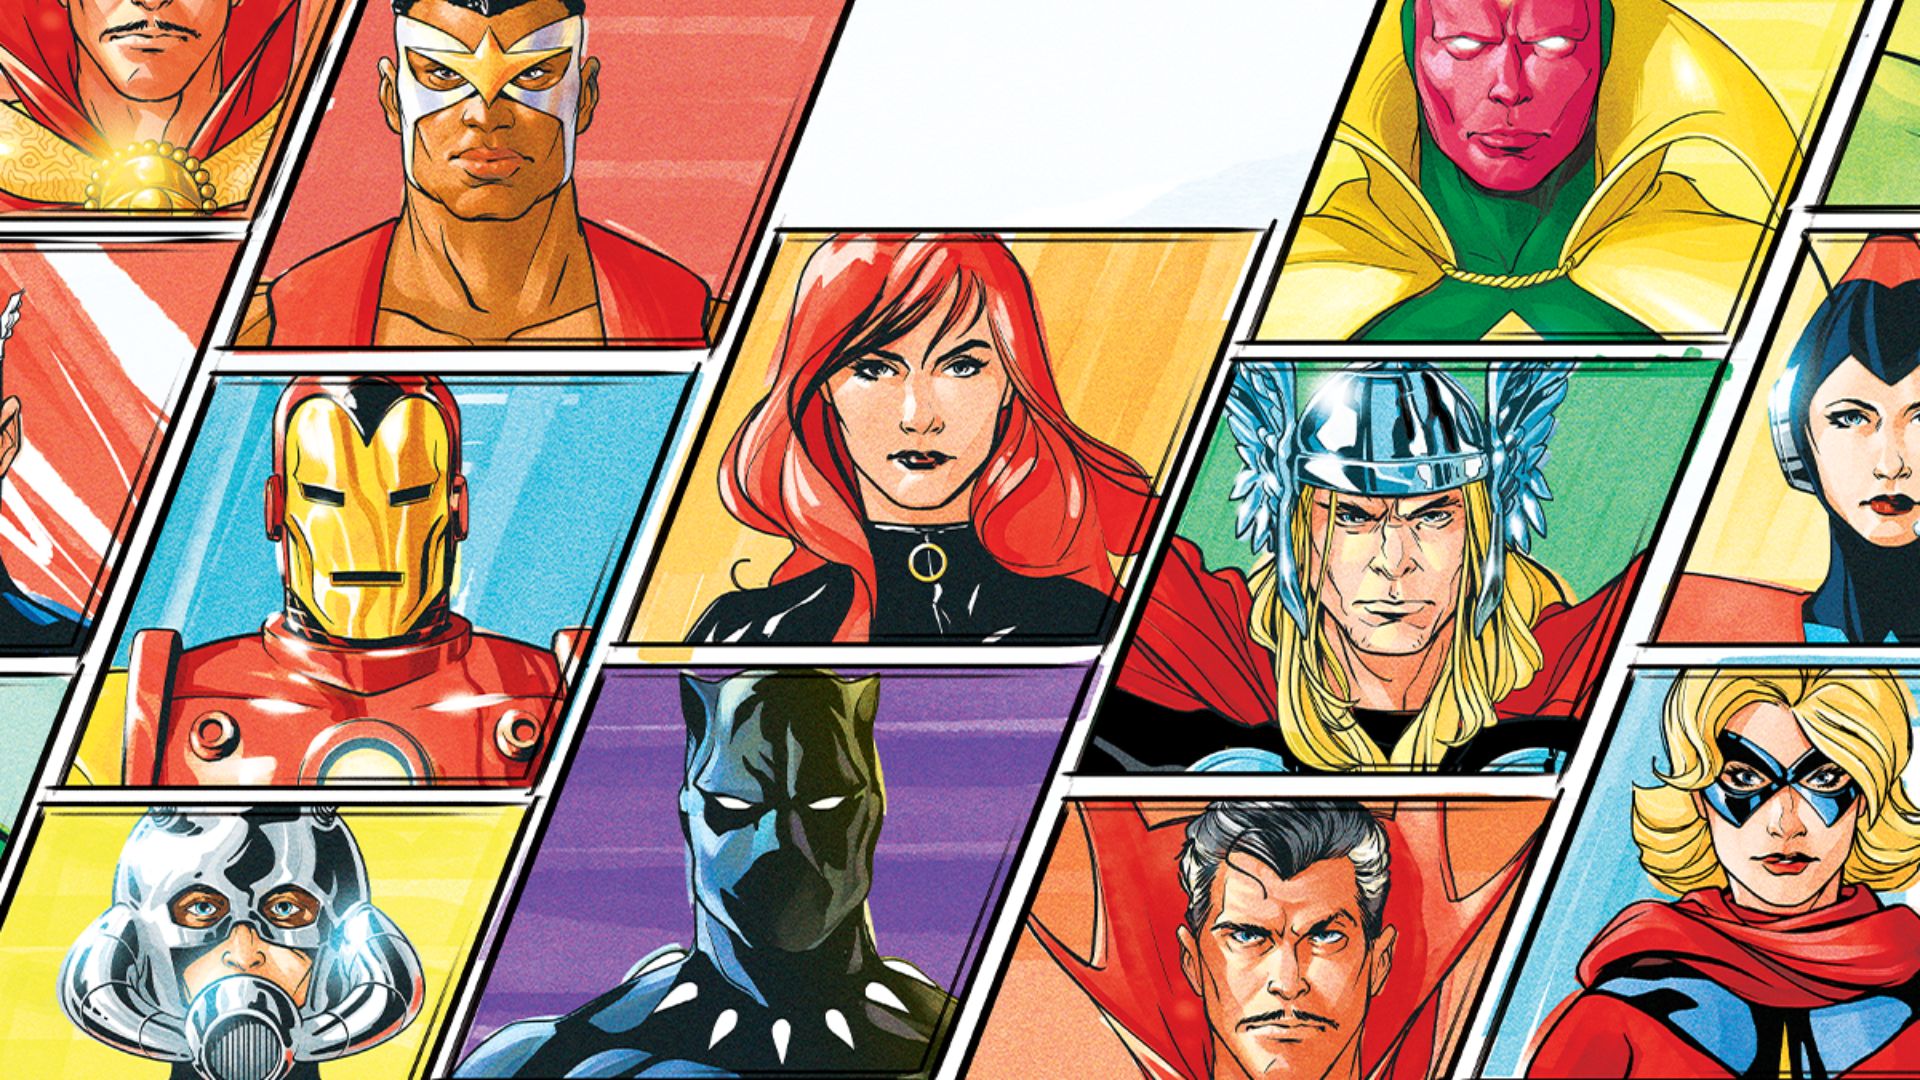 Capitã Marvel • Cena Pós-Créditos Vingadores (legendado) 